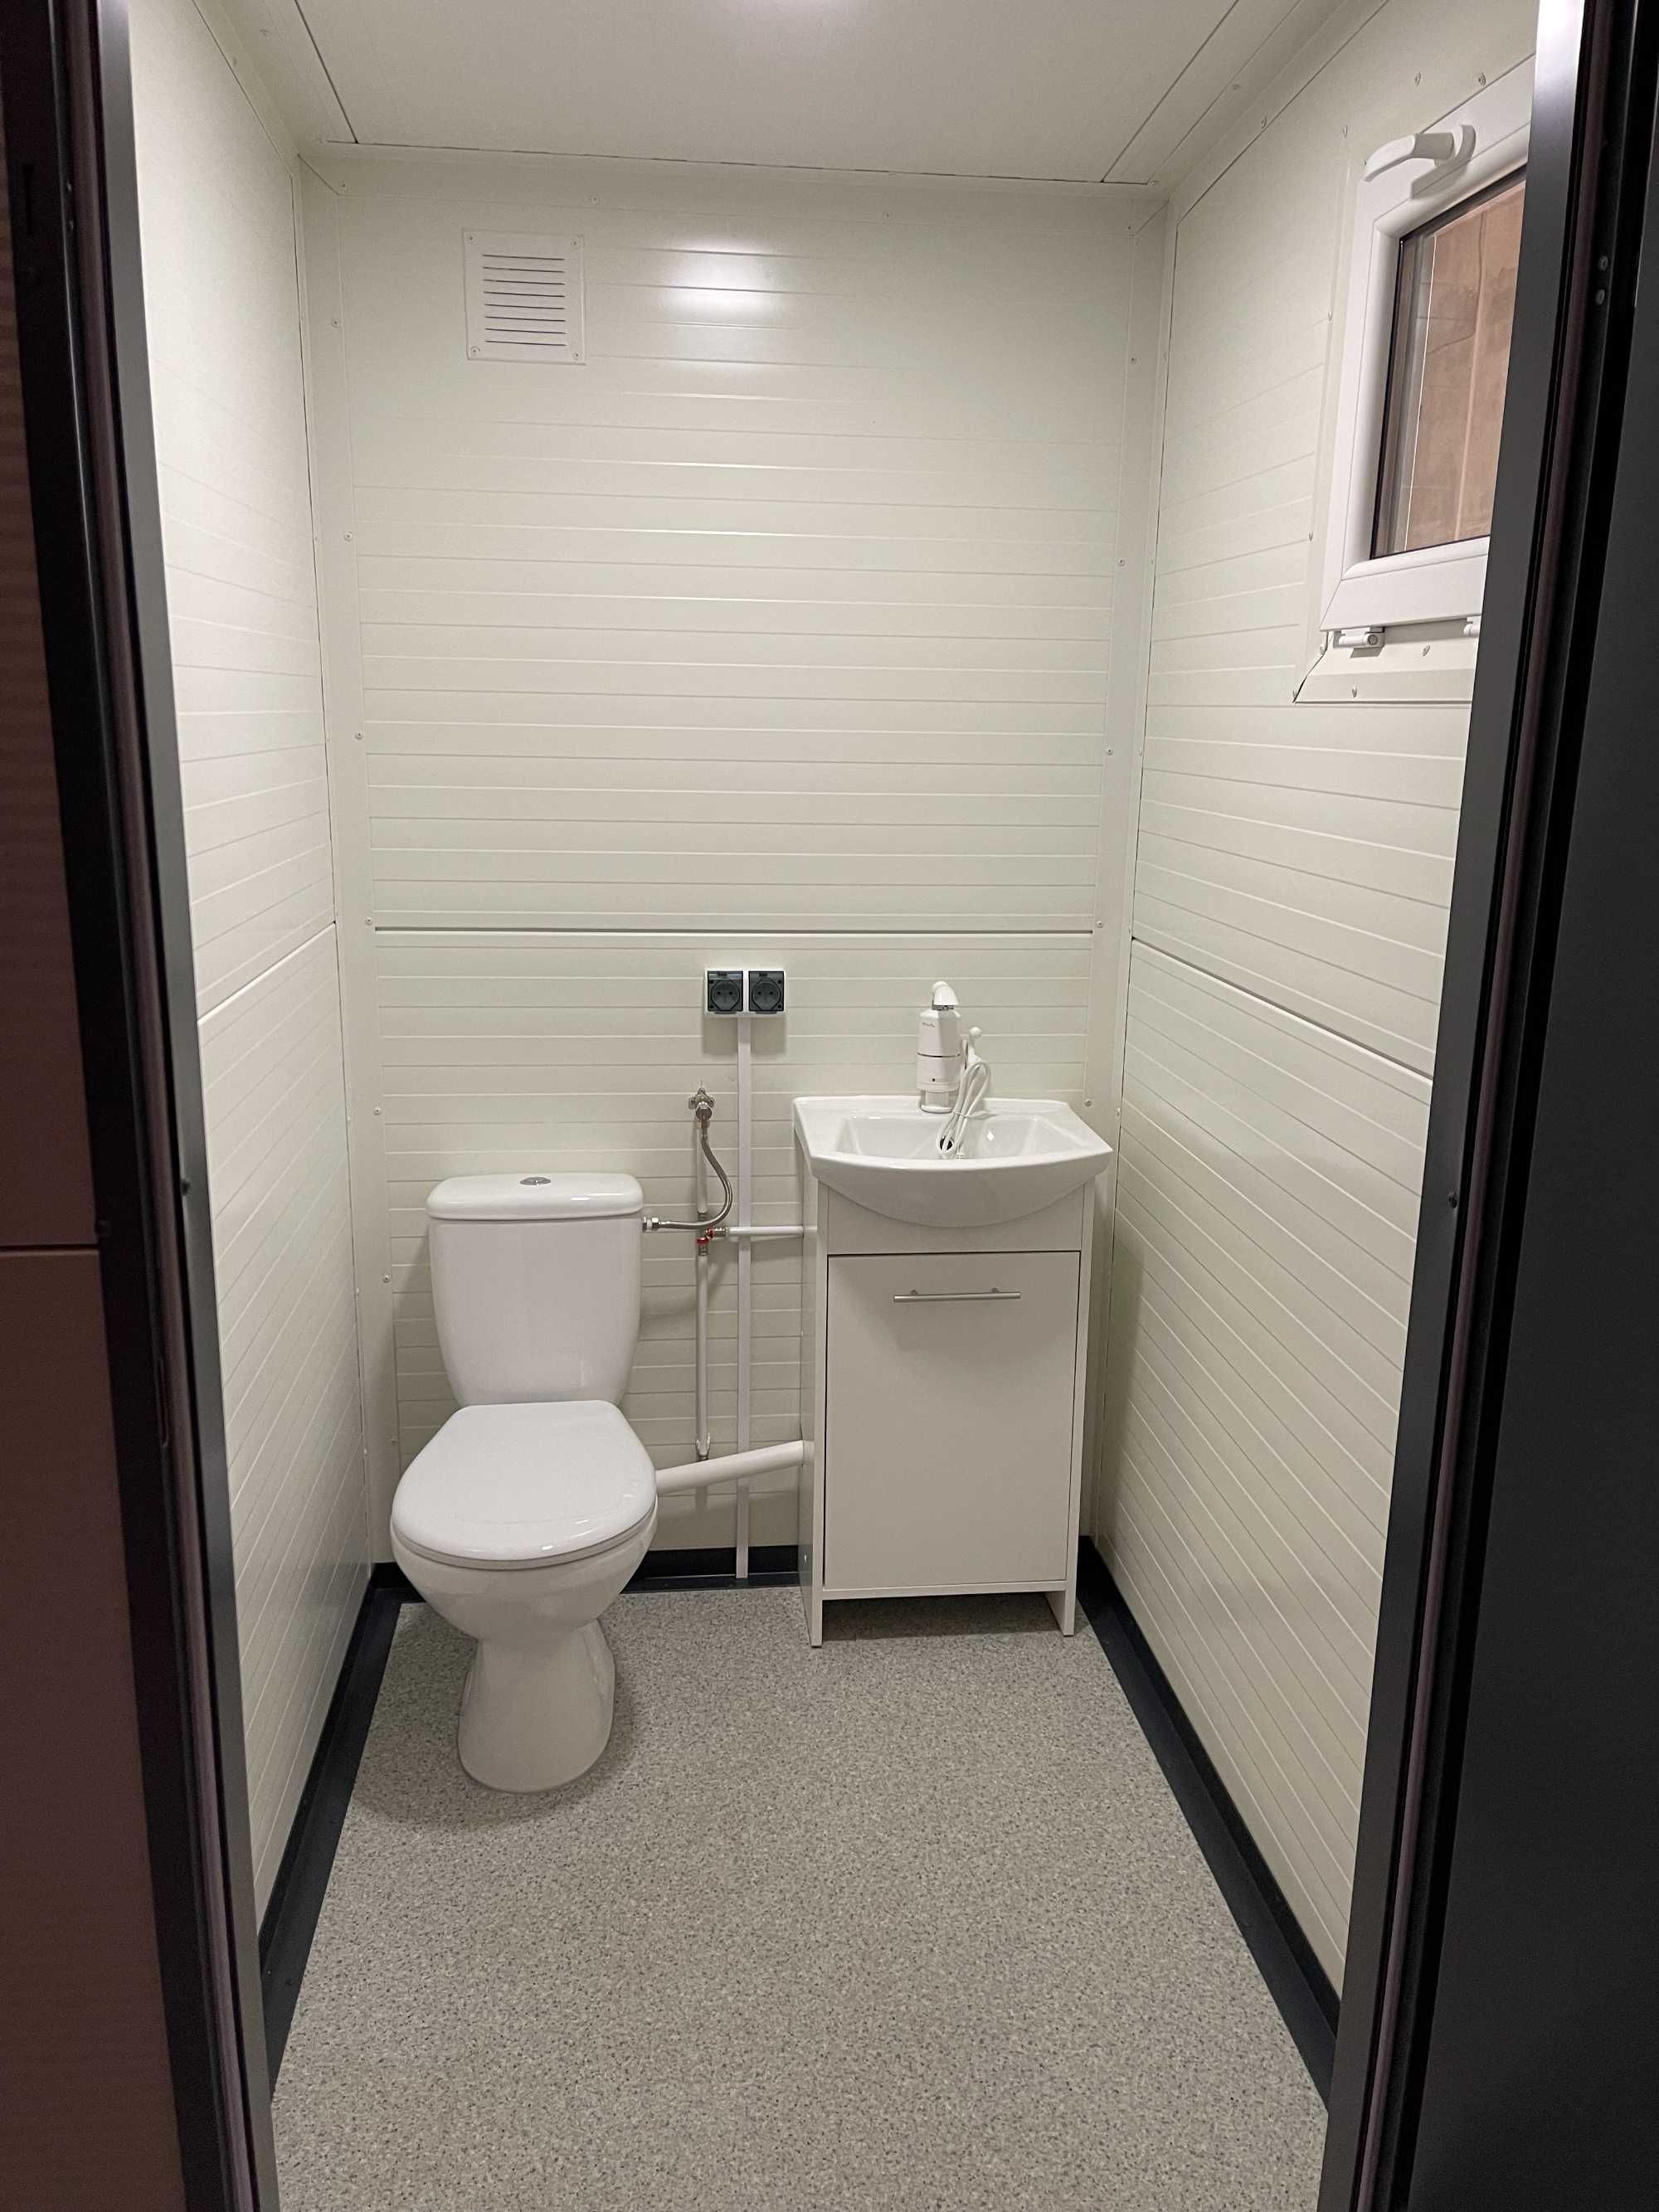 WC toaleta łazienka sanitarny pawilon kontener budka socjalny prysznic